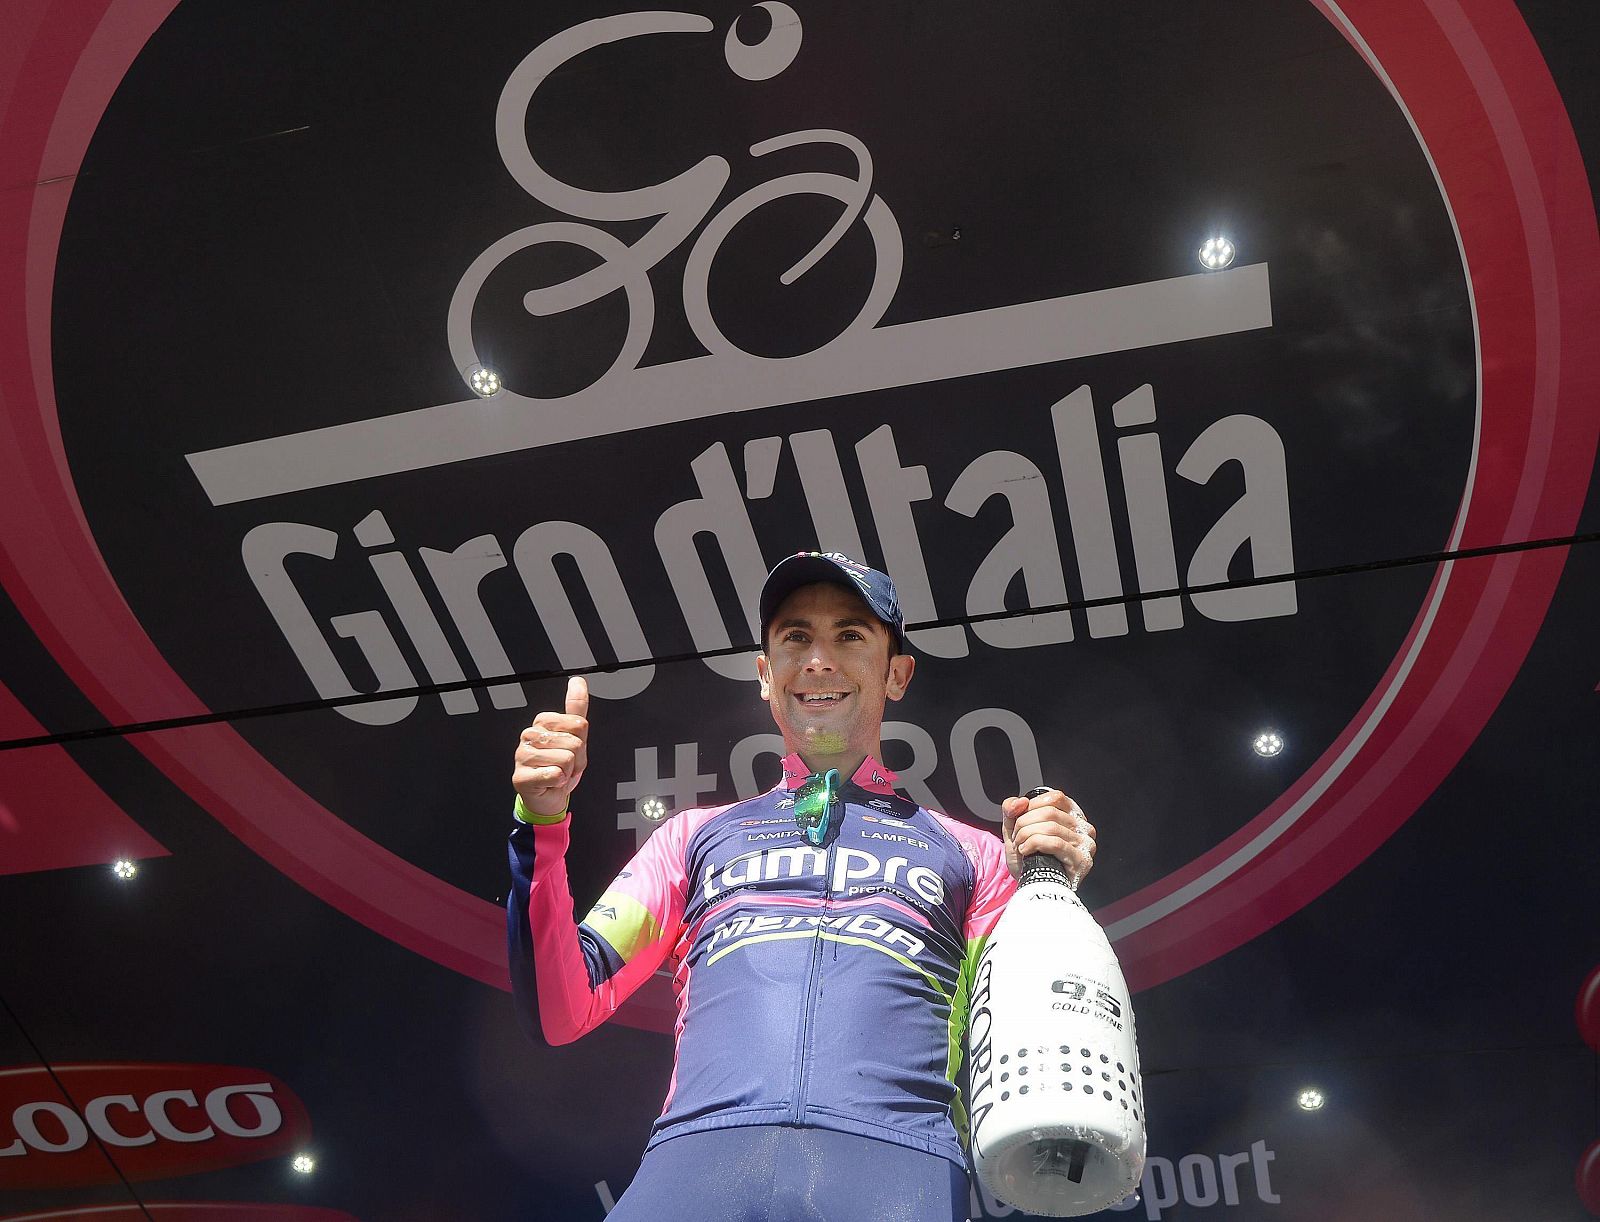 El ciclista italiano Diego Ulissi del equipo Lampre celebra su victoria en el podio.